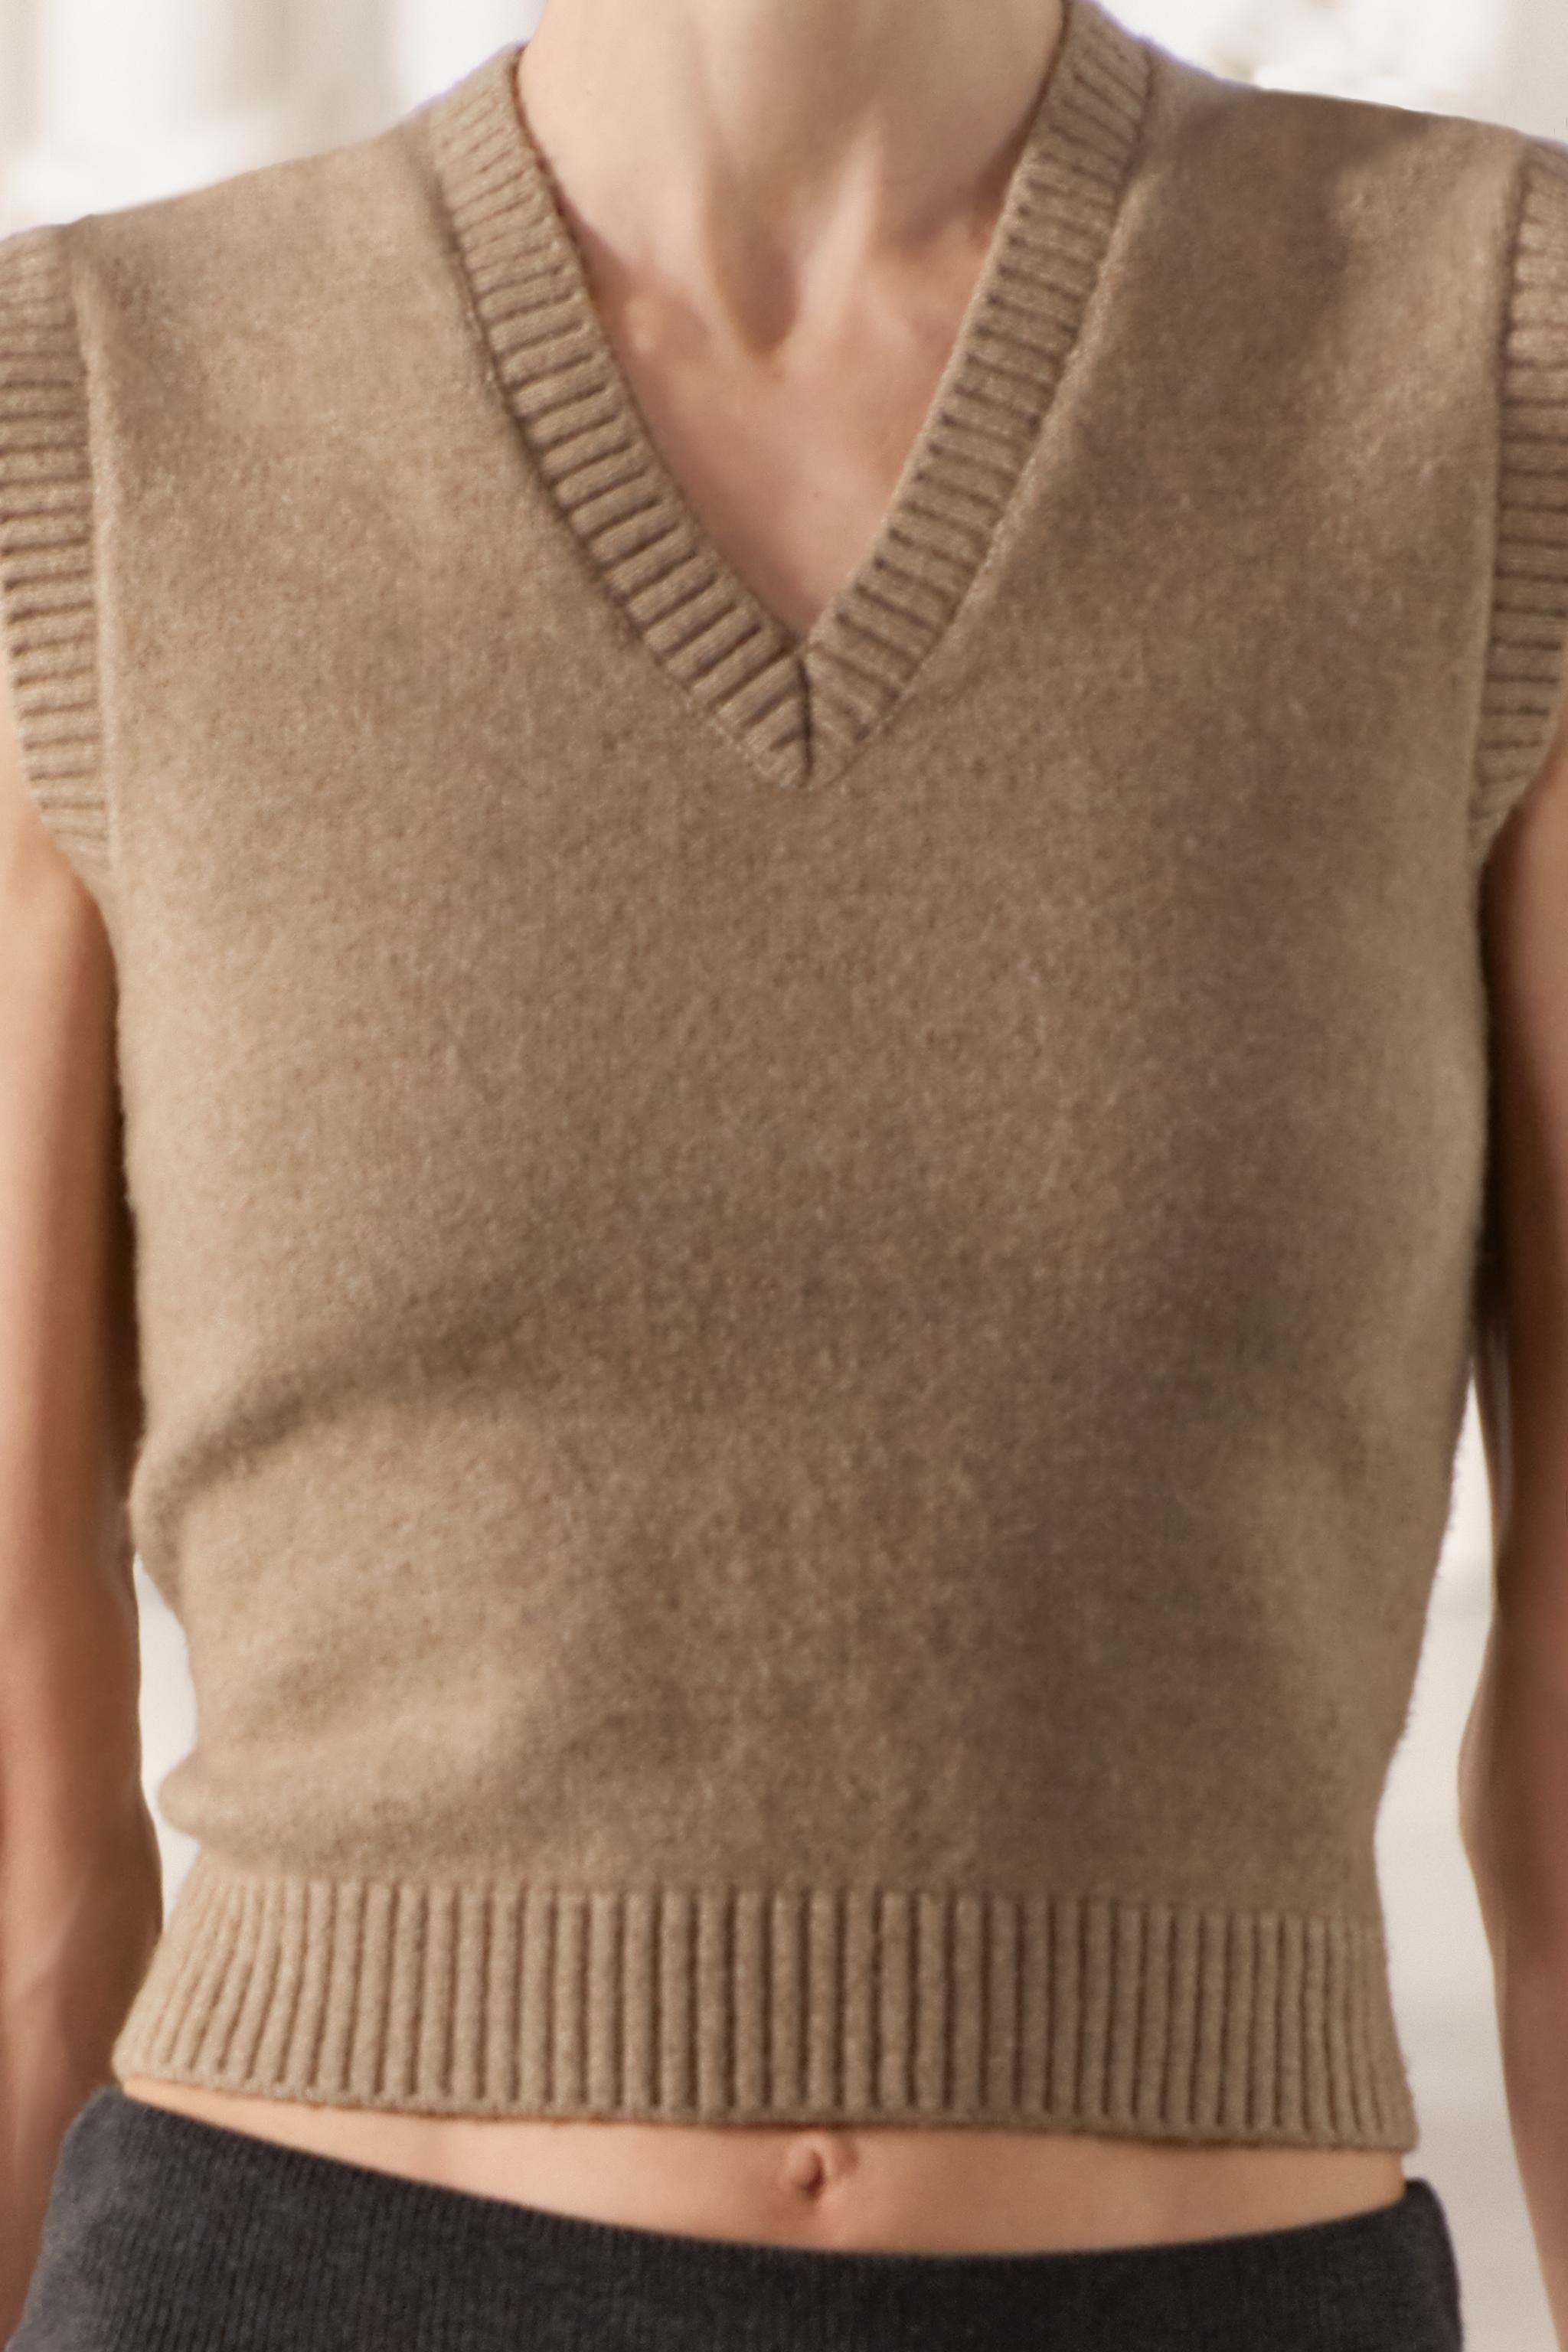 Tan/Beige Sleeveless Sweaters for Women - Macy's